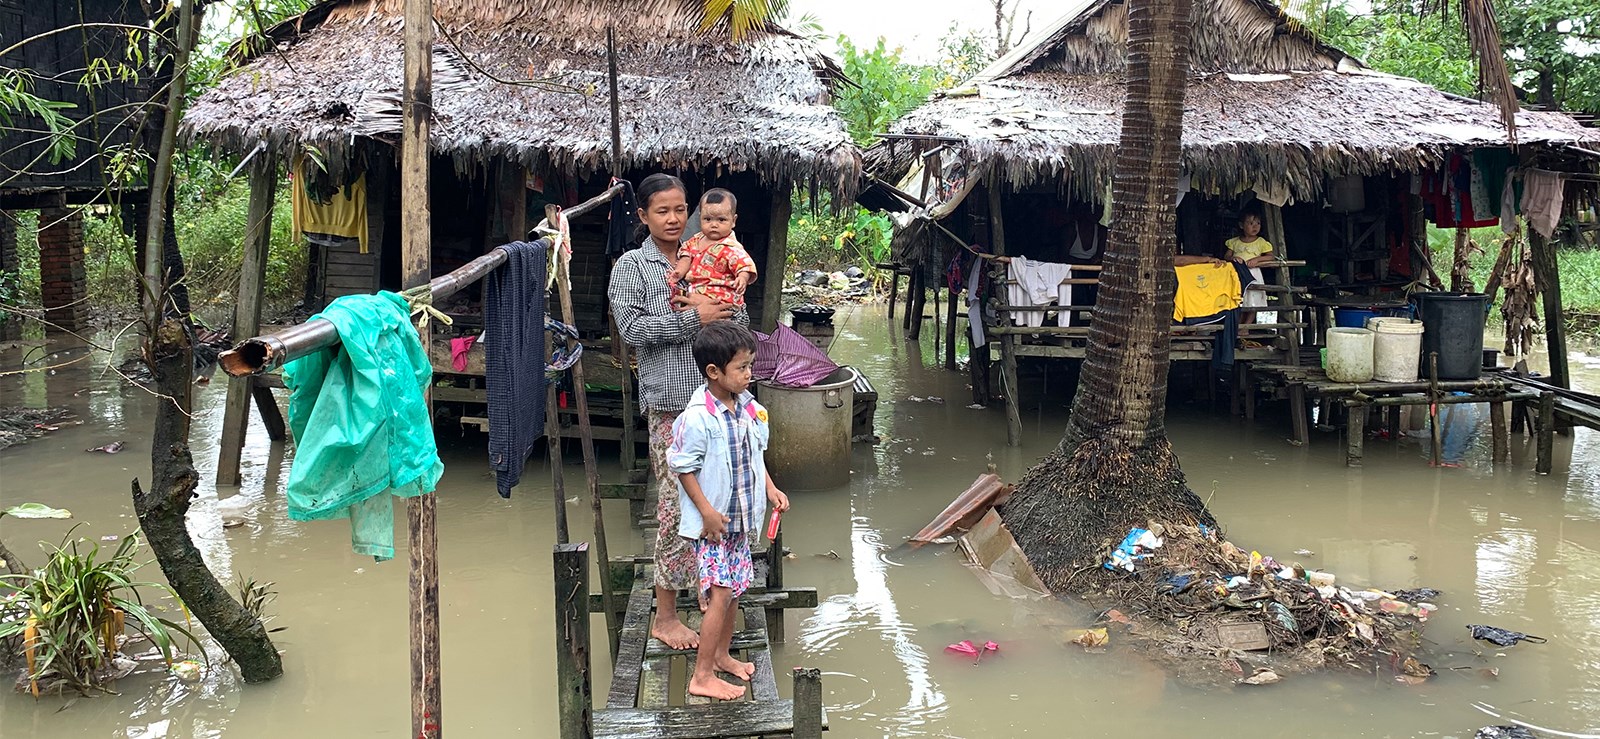 En kvinne og to barn står på en liten bro i en oversvømmet landsby